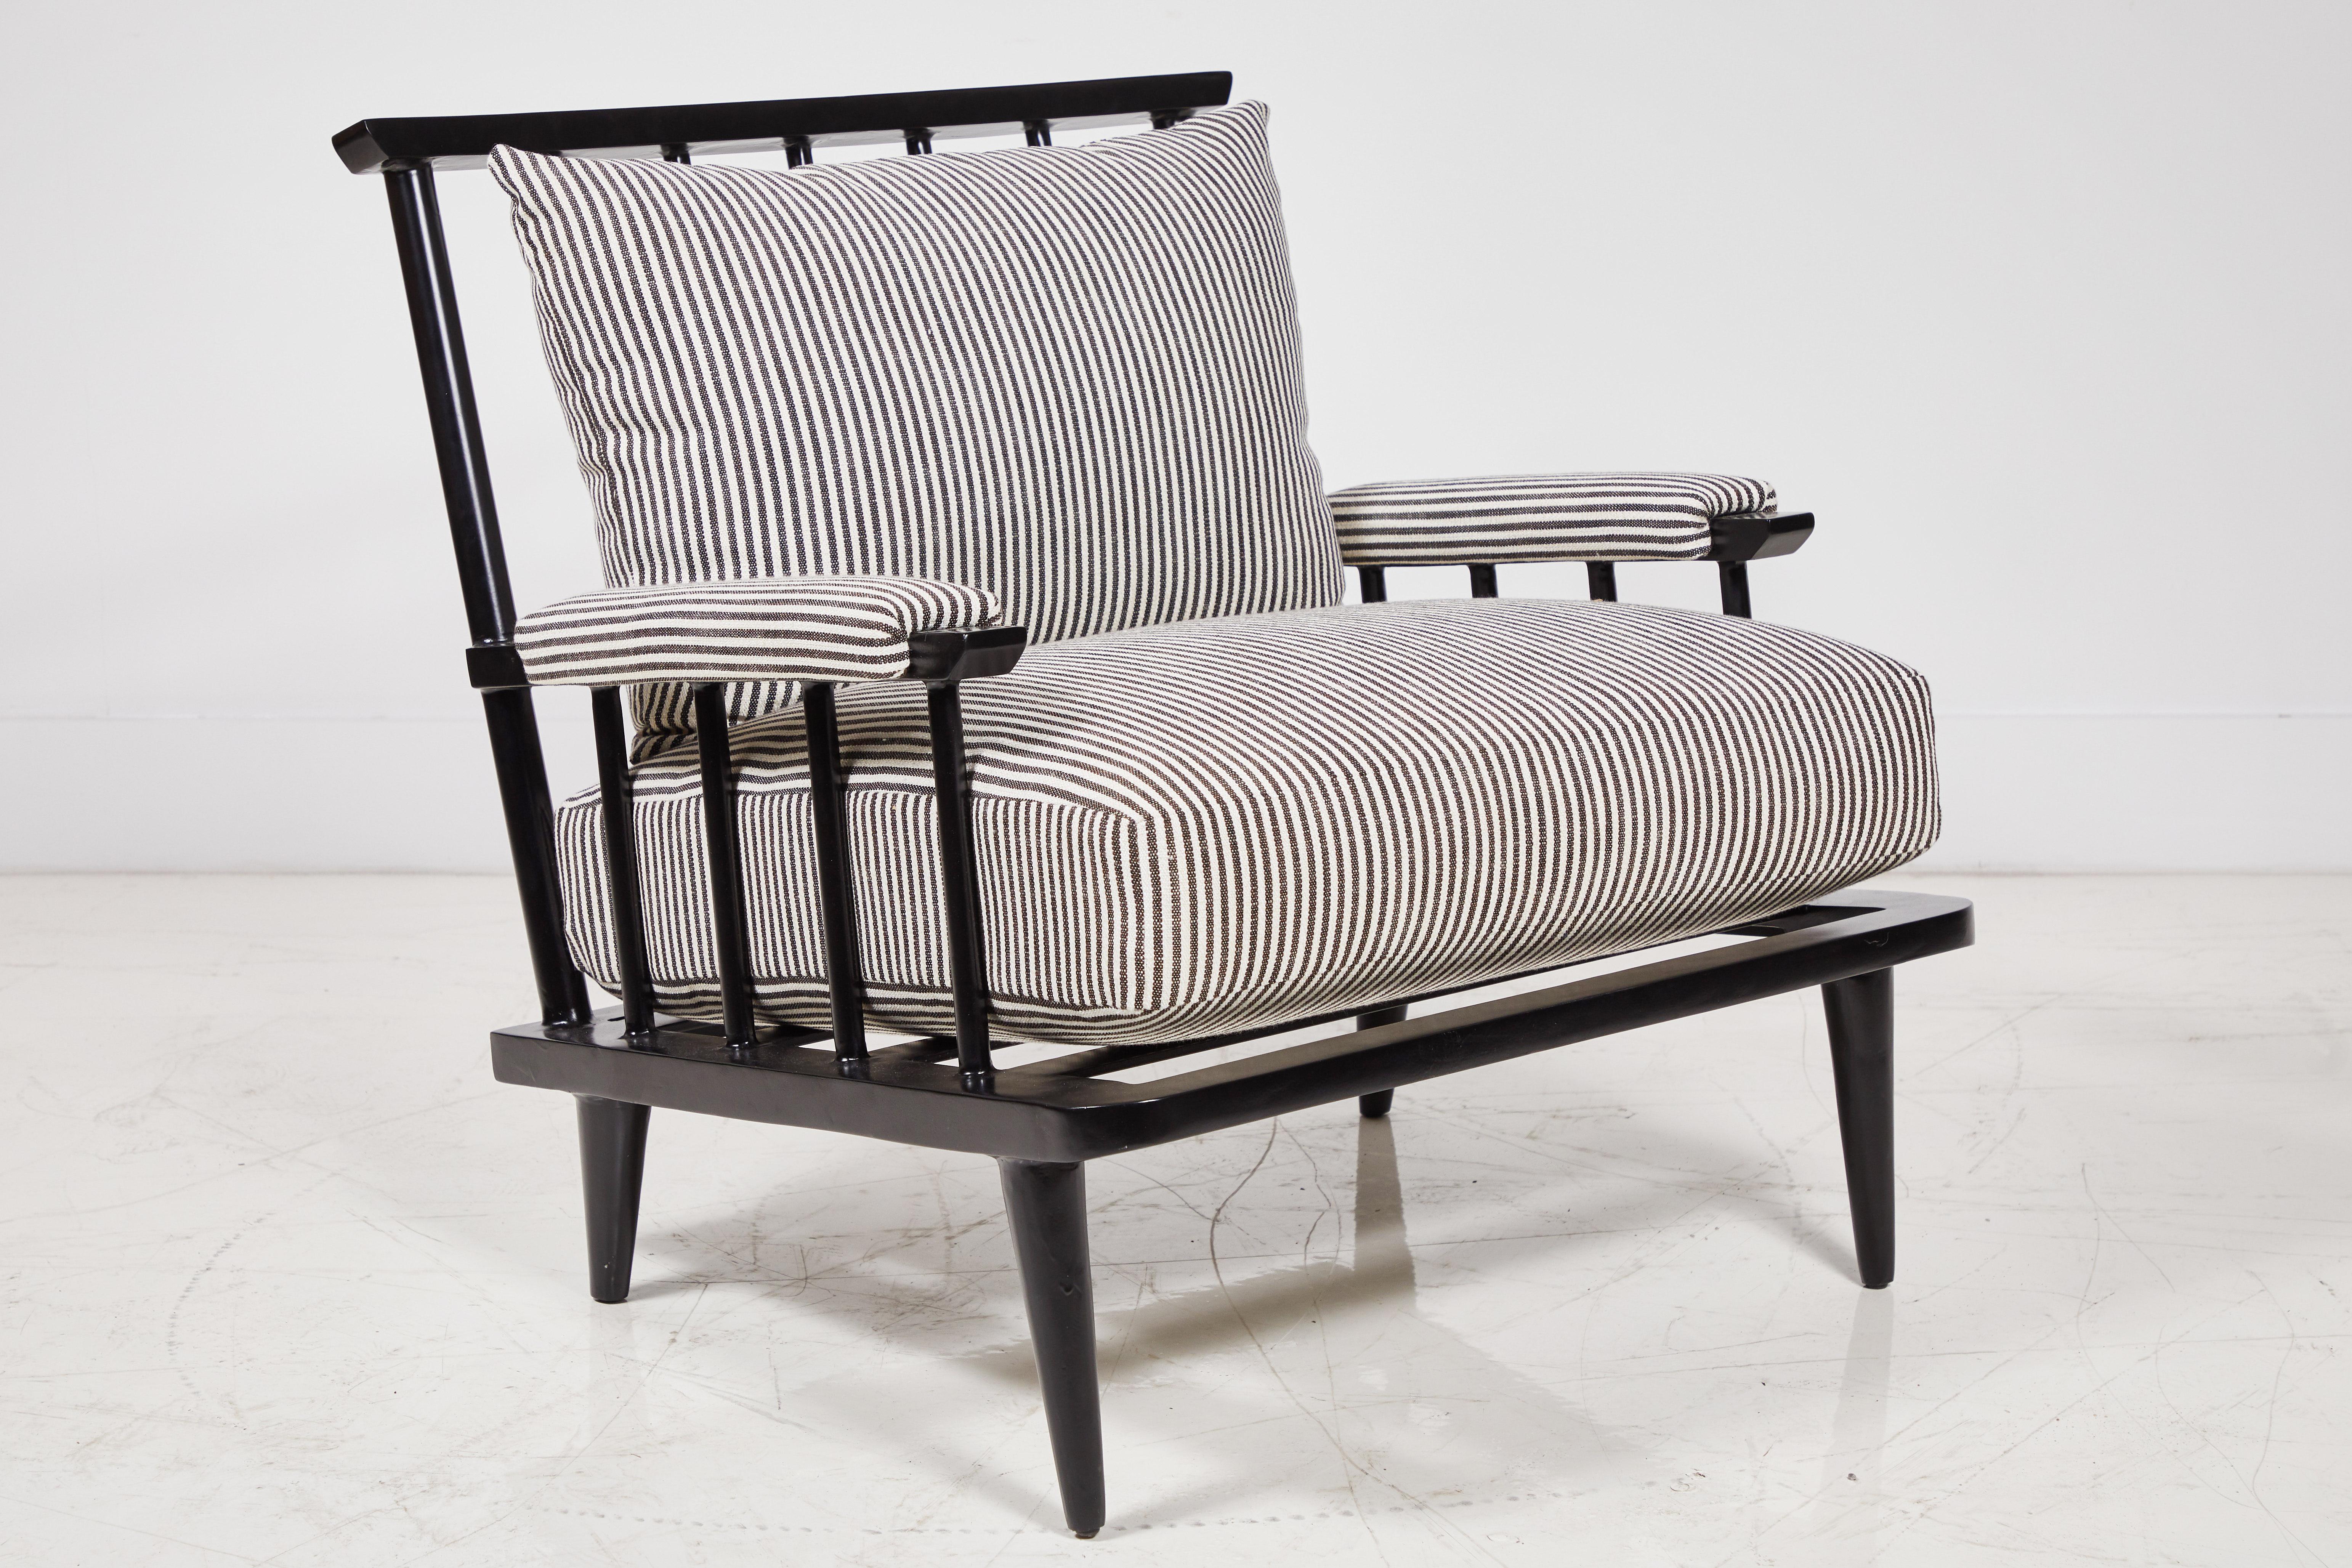 Nickey Kehoe Collection Outdoor-Sessel mit schwarzer Metallspindel. Der schwarz-weiß gestreifte rosa Tarlow-Stoff ist für den Außenbereich geeignet.